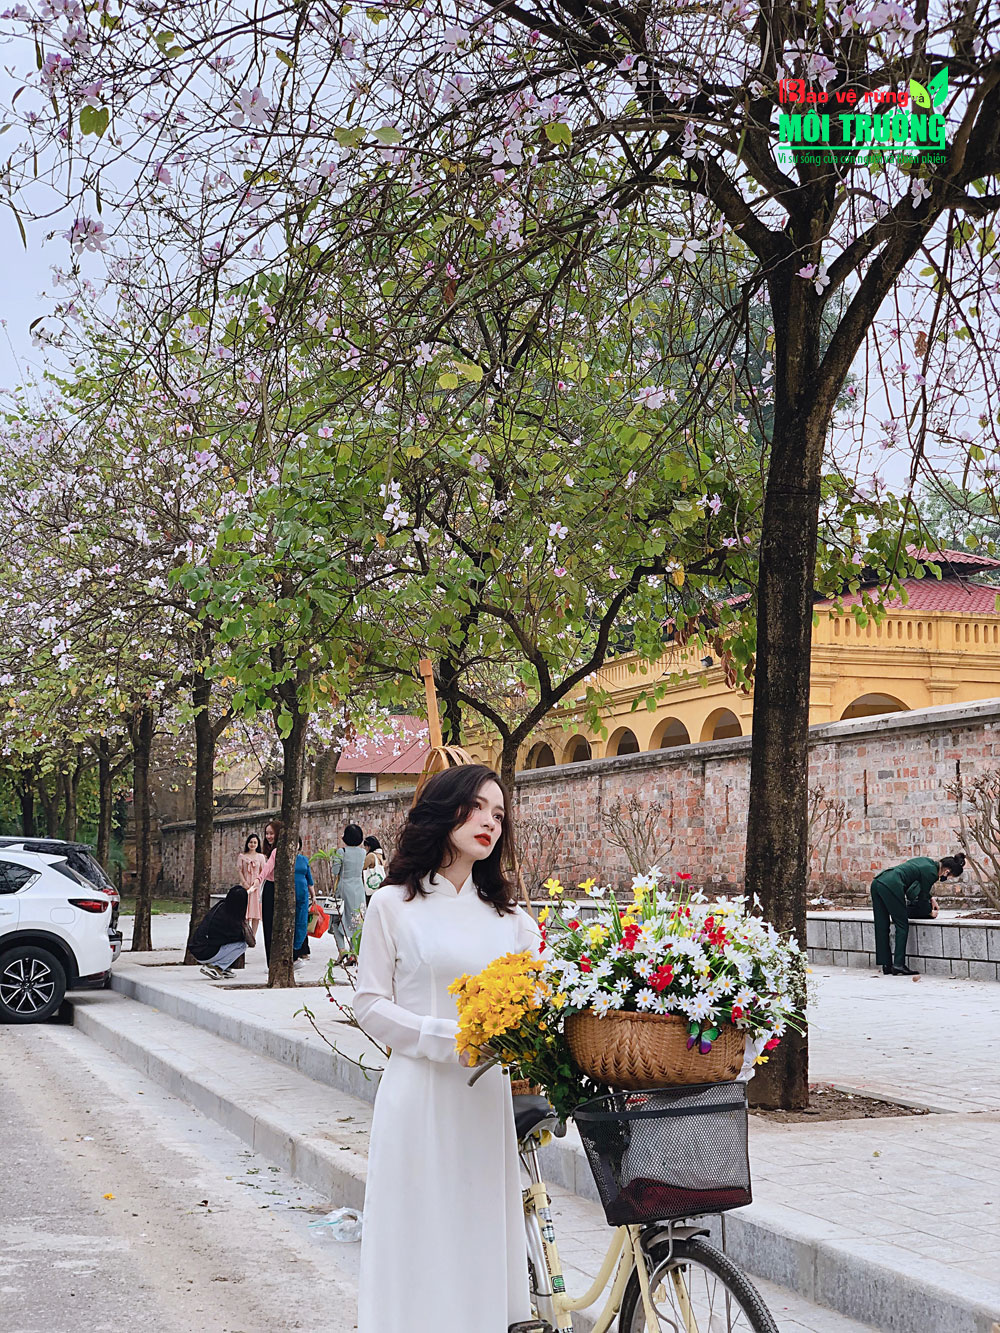 Dưới bóng cây ban, người thiếu nữ Hà Thành dường như được tỏa sáng hơn trong sắc trắng hoa ban. Đa số du khách lựa chọn cho mình những bộ áo dài, trang phục dân tộc để lưu lại khoảnh khắc khoe sắc của hoa ban.